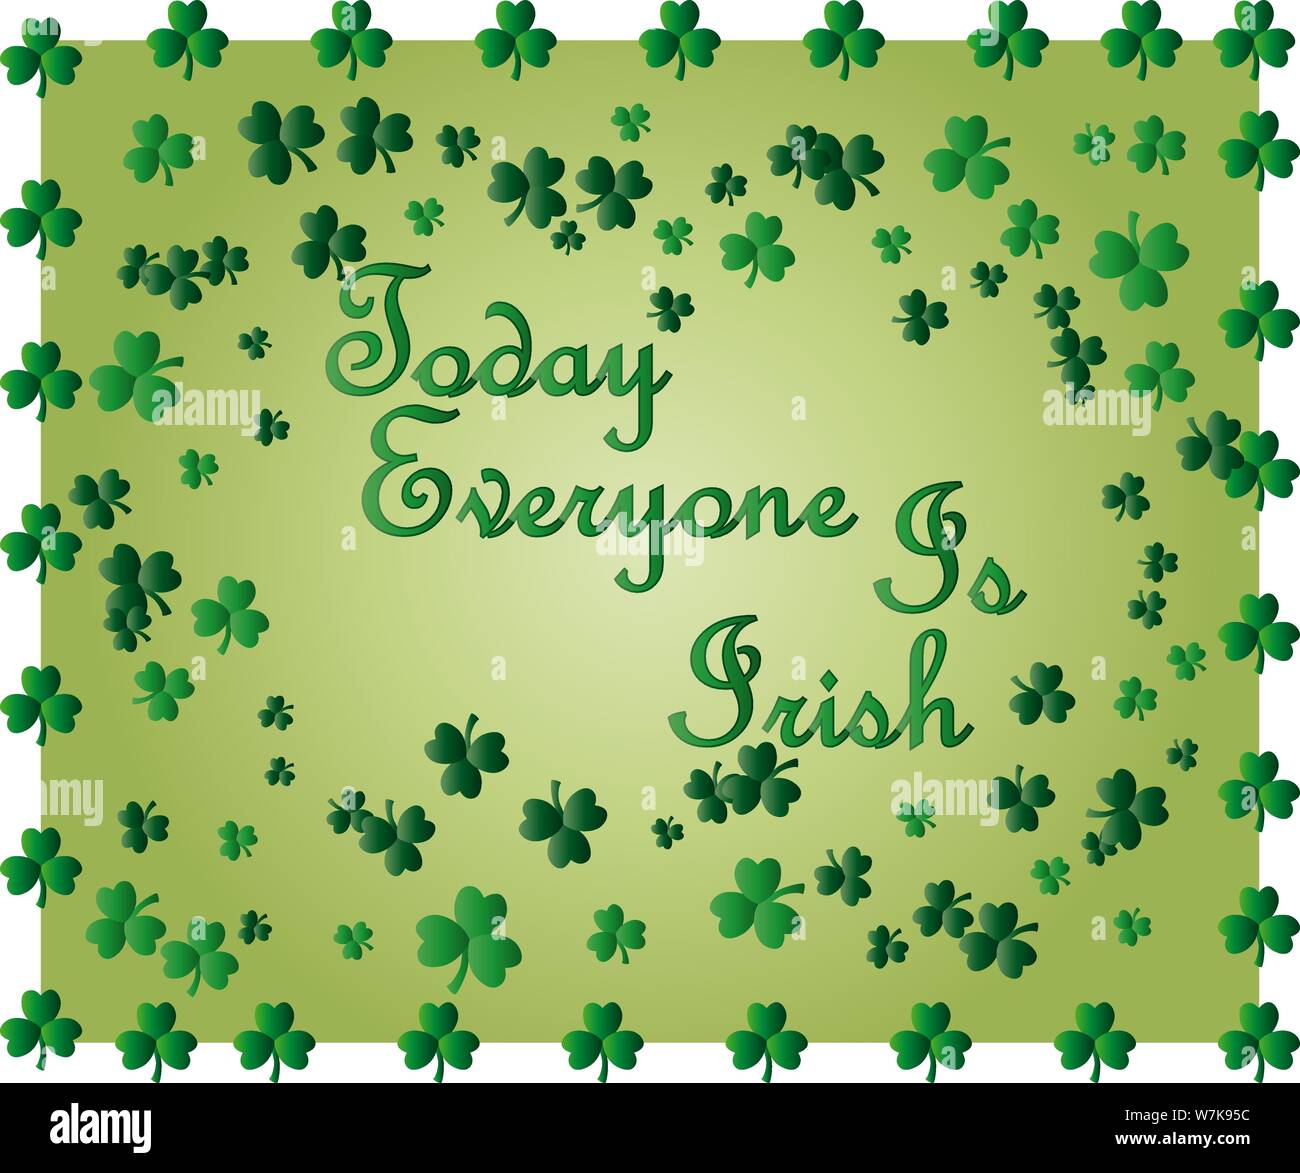 Saint Patrick's Day Greeting card avec les feuilles de trèfle vert étincelaient et texte. Inscription - Aujourd'hui, tout le monde est Irlandais Illustration de Vecteur